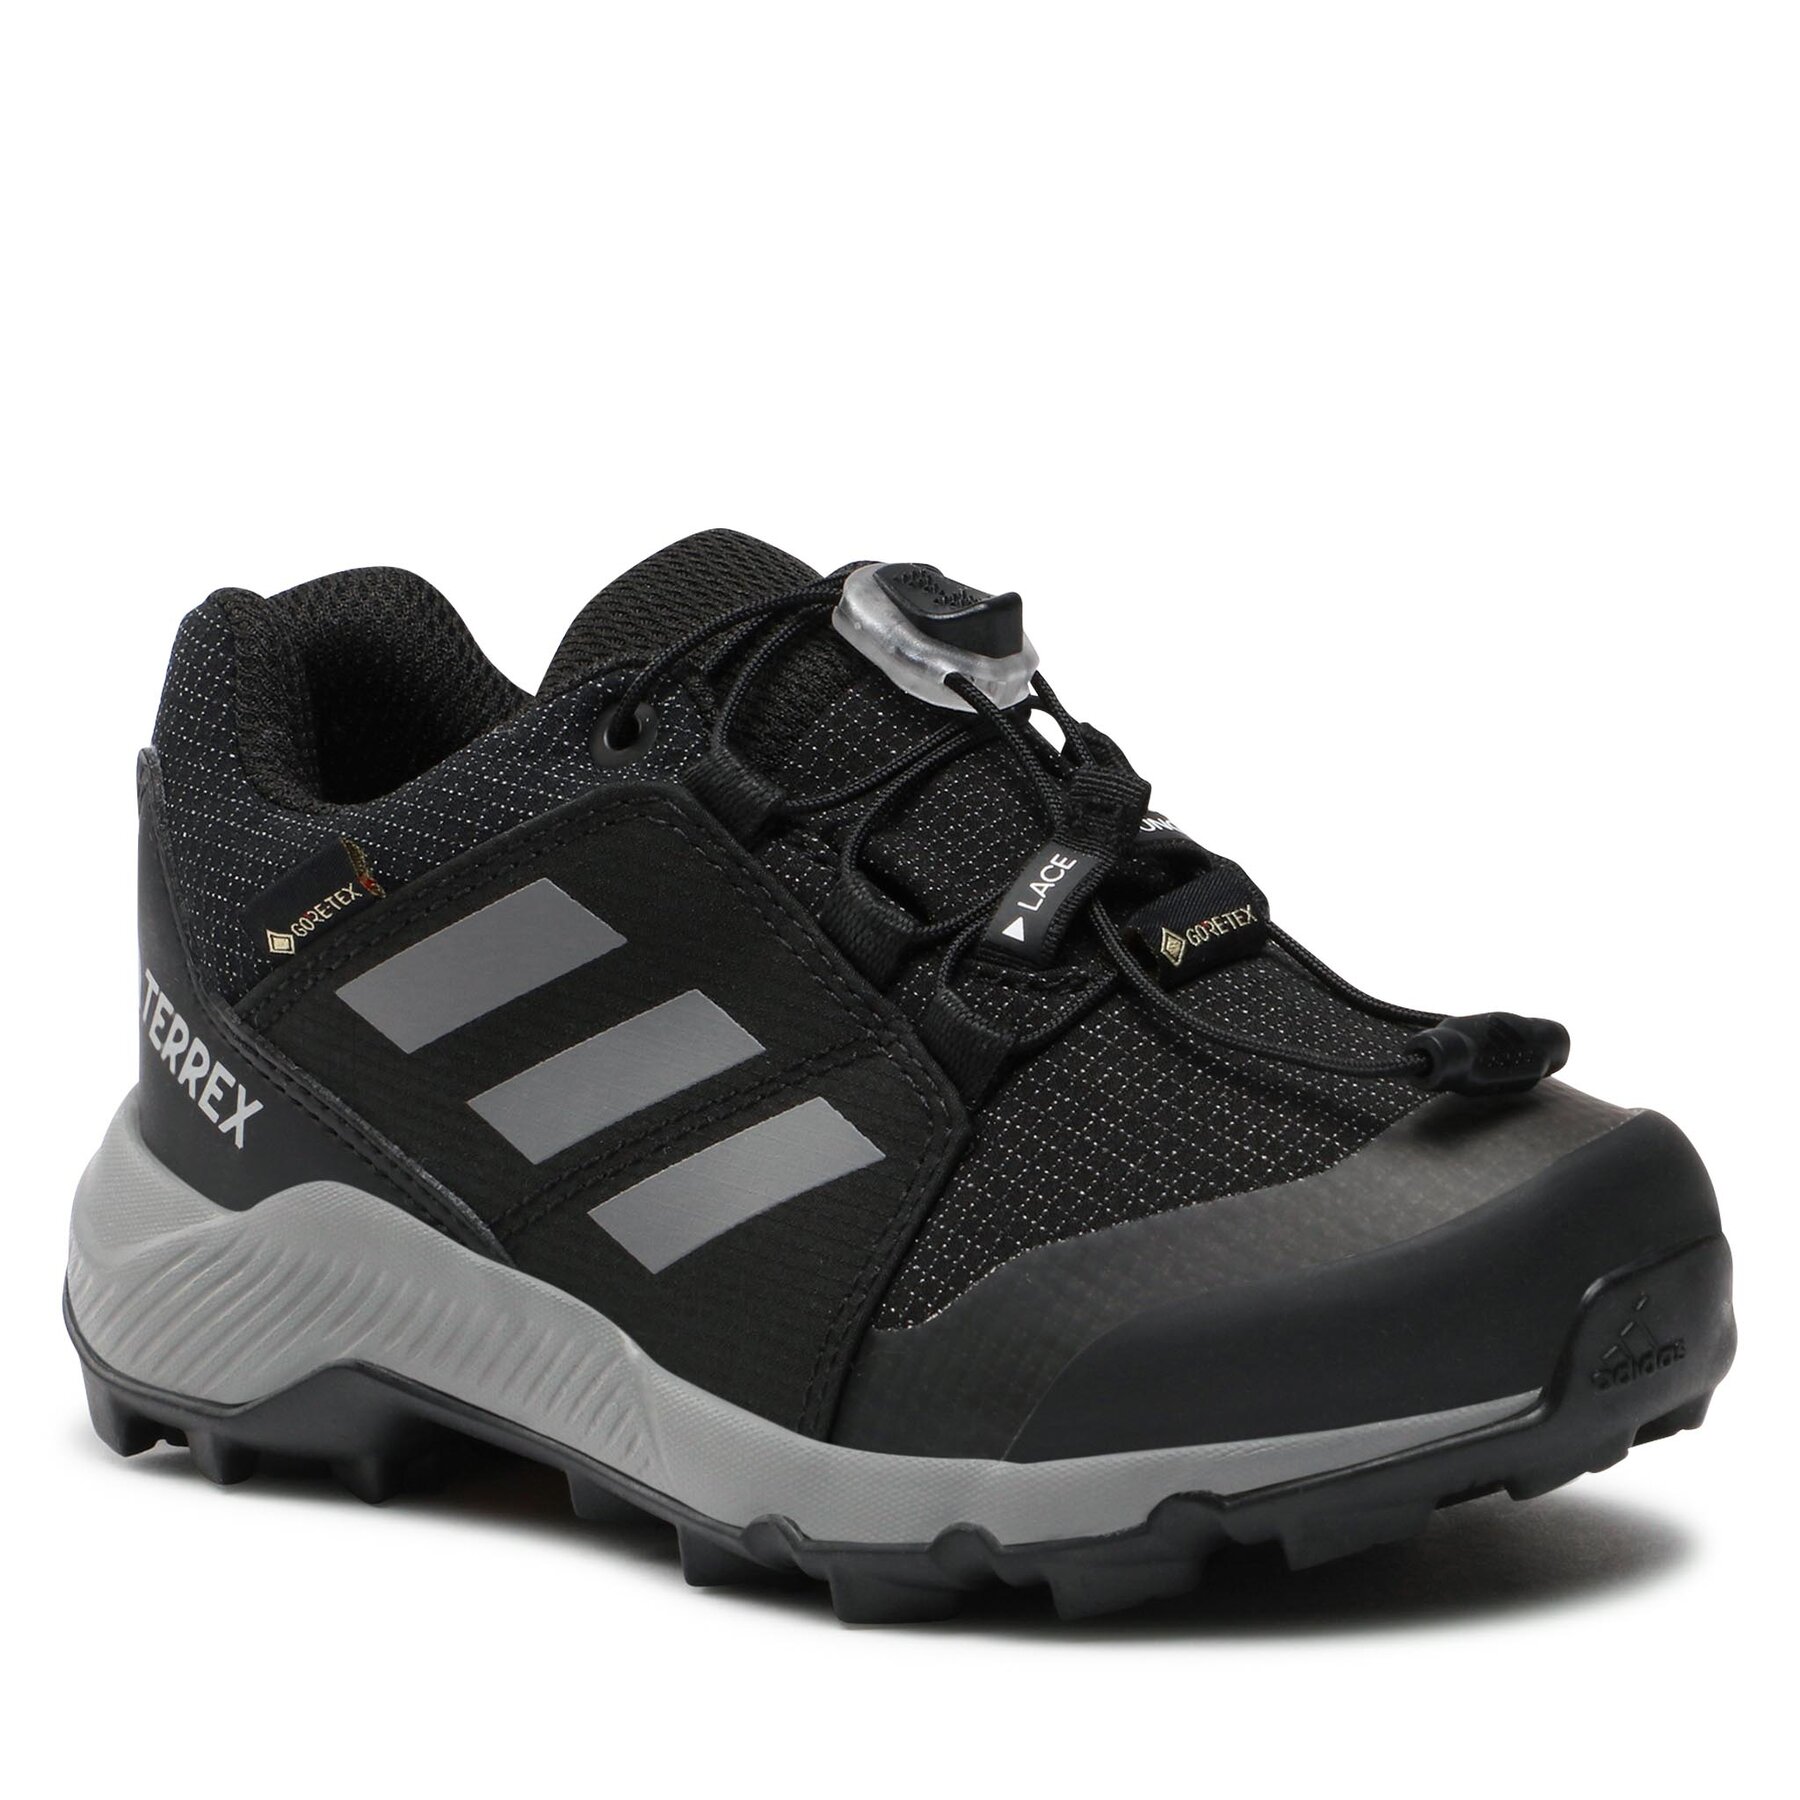 Batai adidas Terrex GORE-TEX Hiking Shoes IF7519 Cblack/Grethr/Cblack